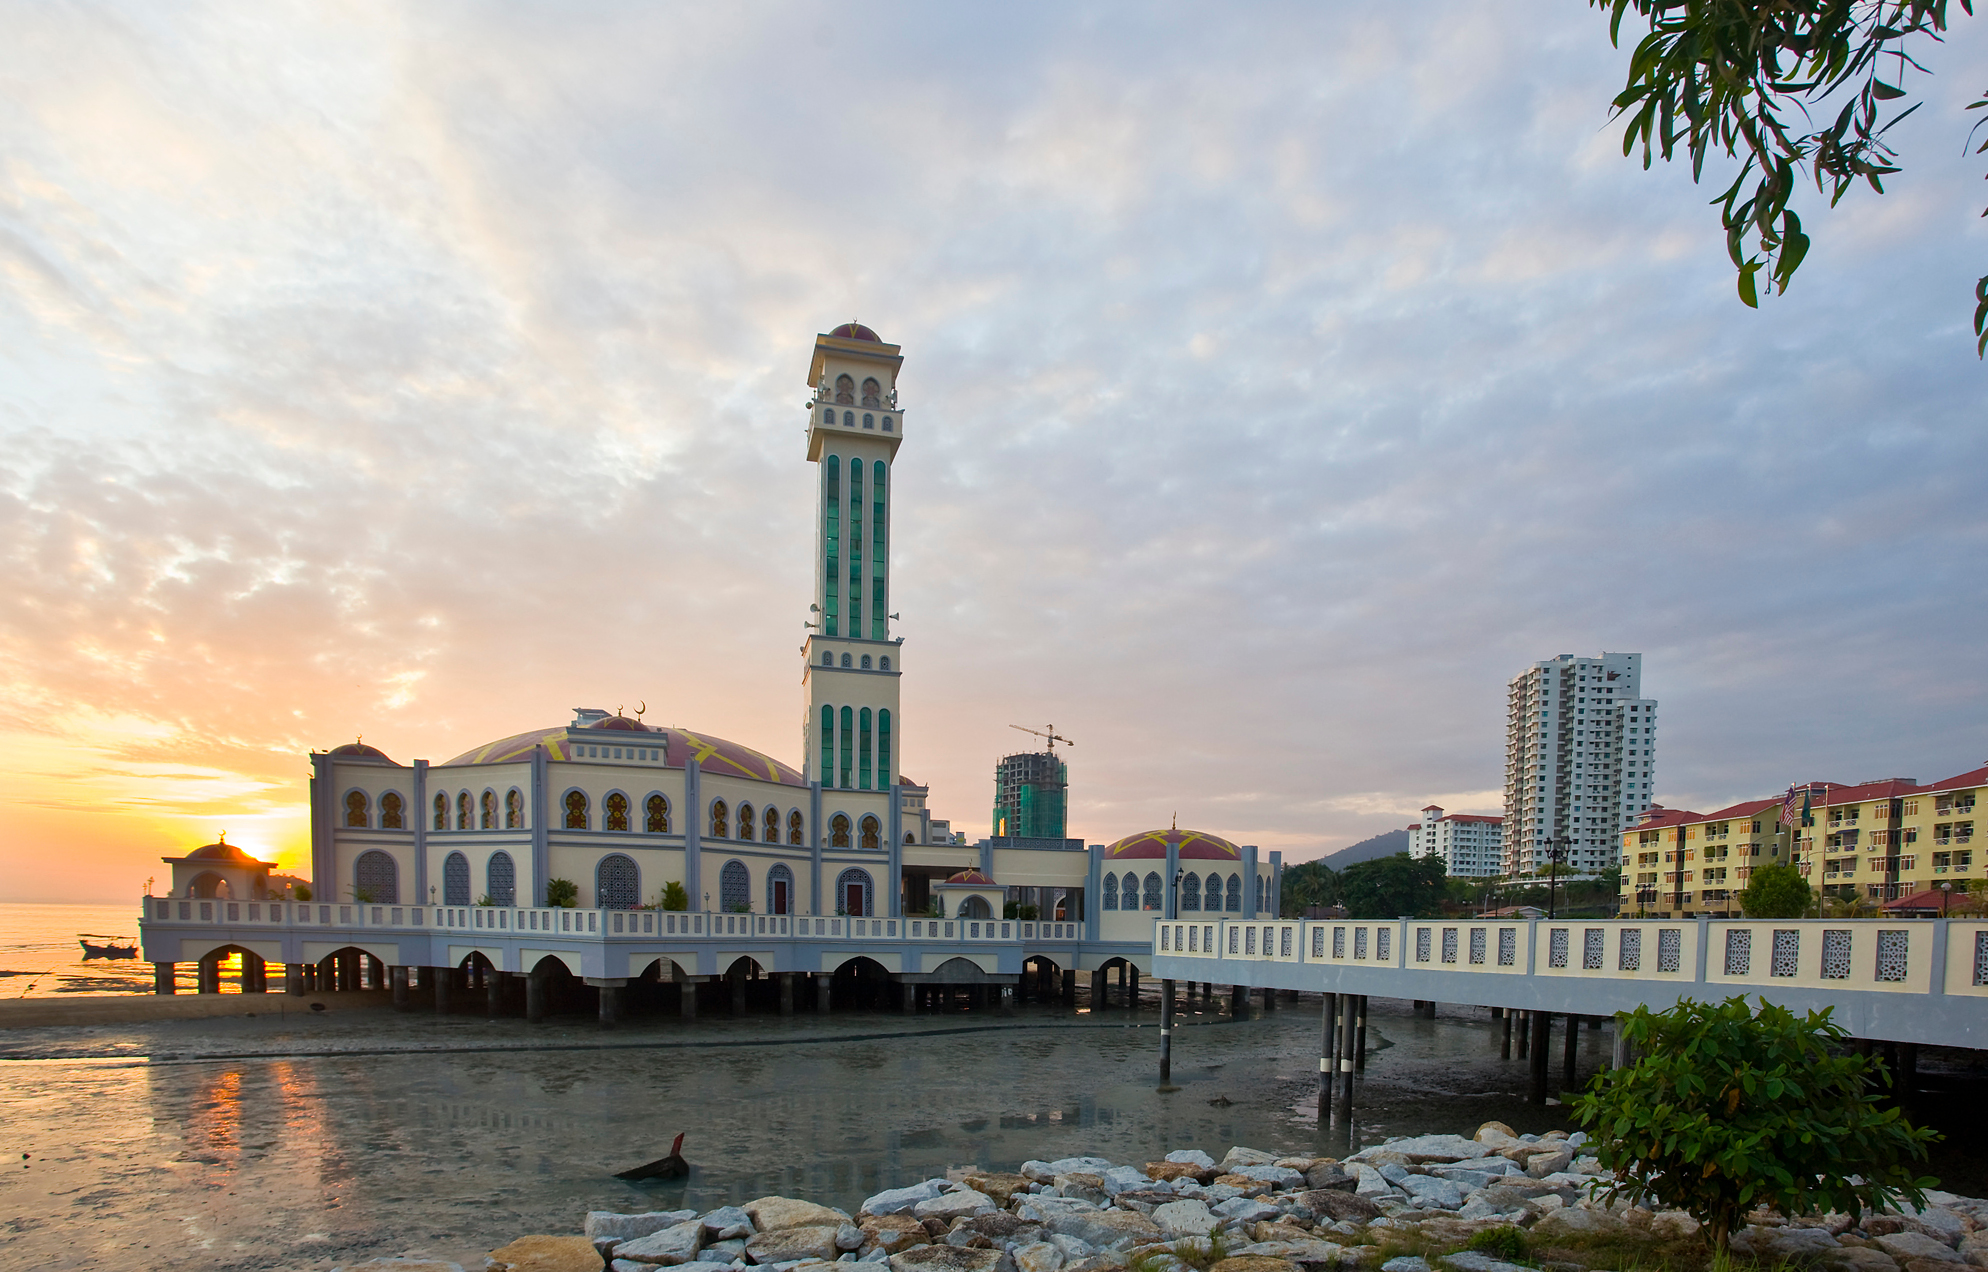 Masjid terapung tanjung bungah